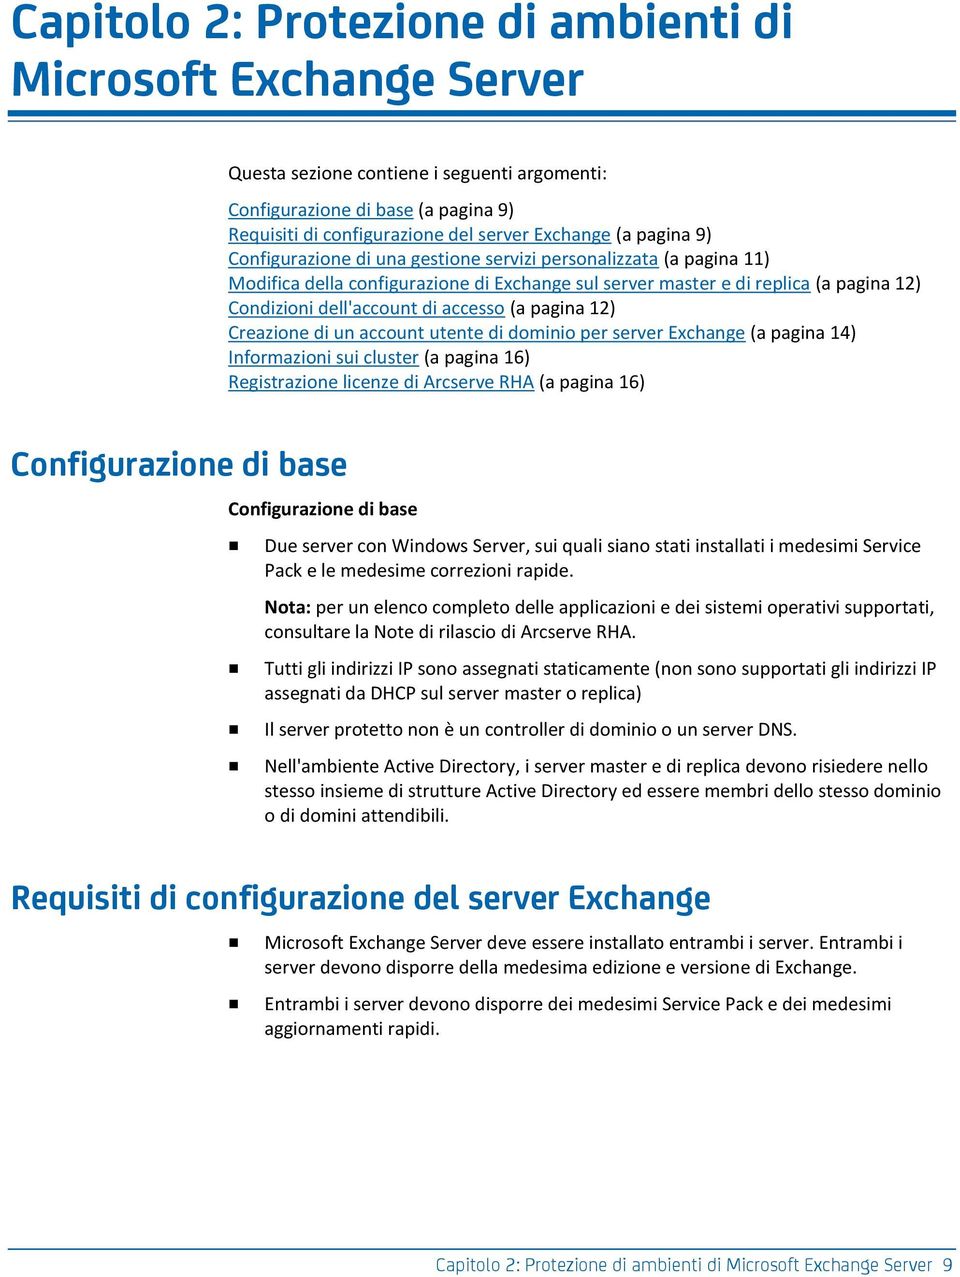 (a pagina 12) Creazione di un account utente di dominio per server Exchange (a pagina 14) Informazioni sui cluster (a pagina 16) Registrazione licenze di Arcserve RHA (a pagina 16) Configurazione di